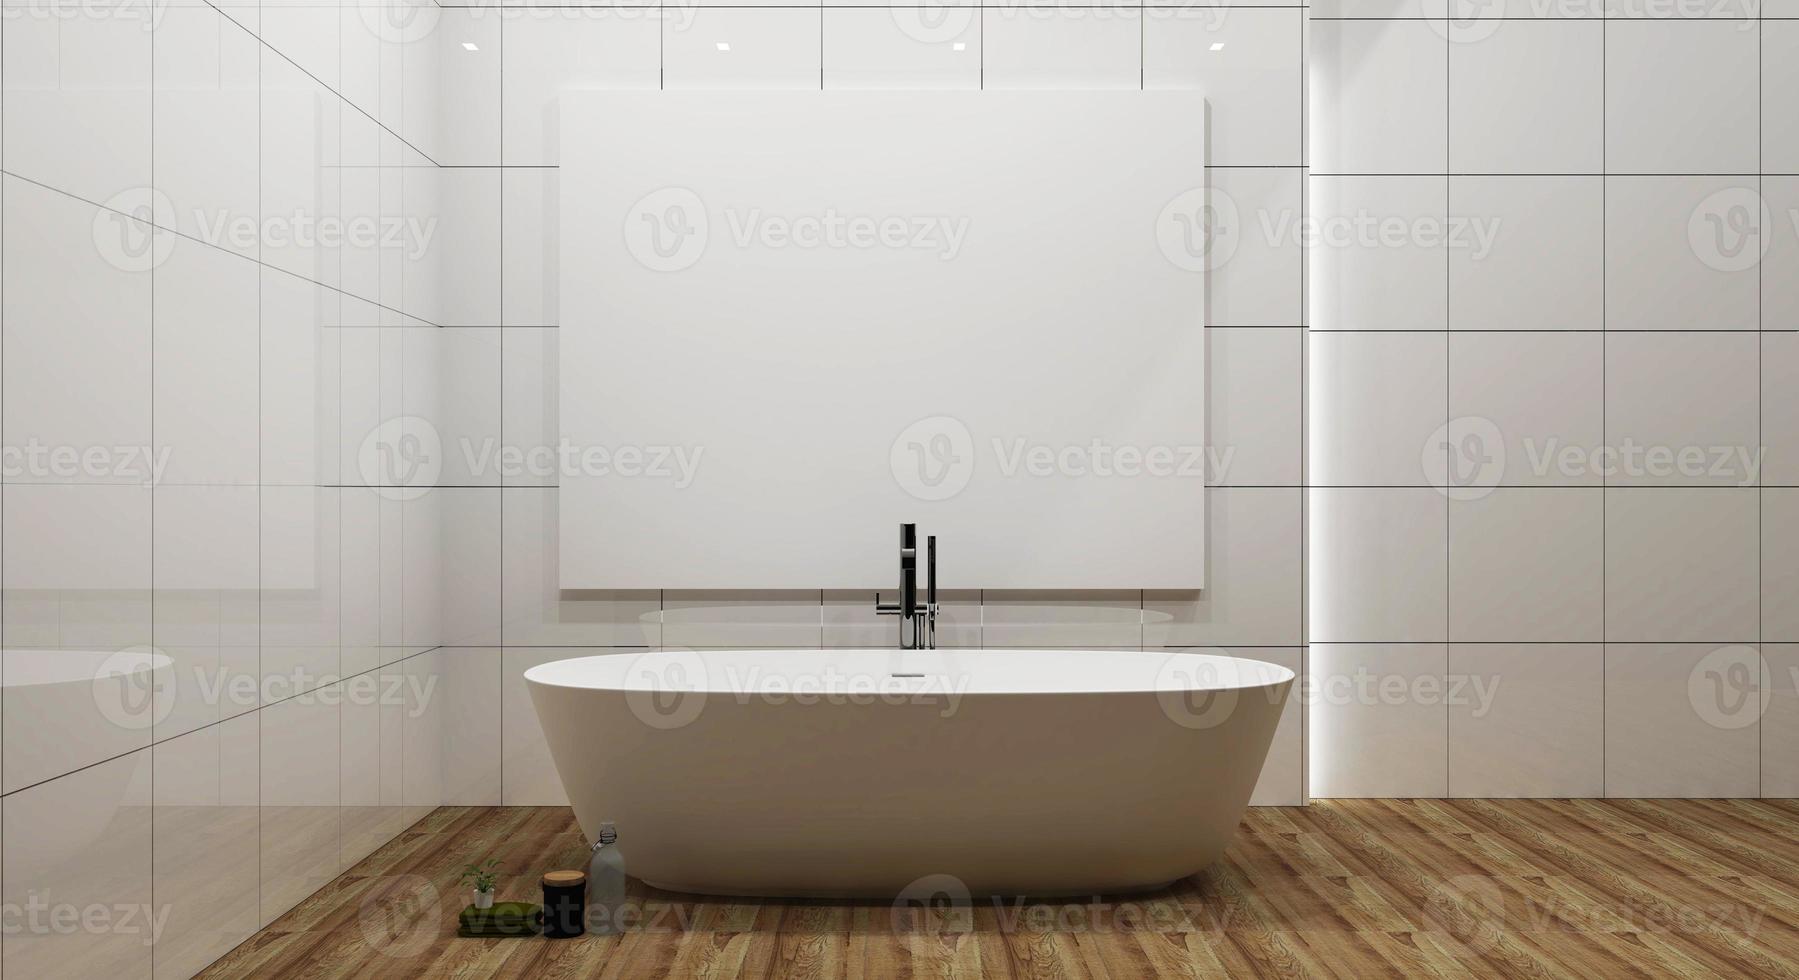 Badezimmer-Innenbadewanne und Rahmenmodell. 3D-Rendering foto